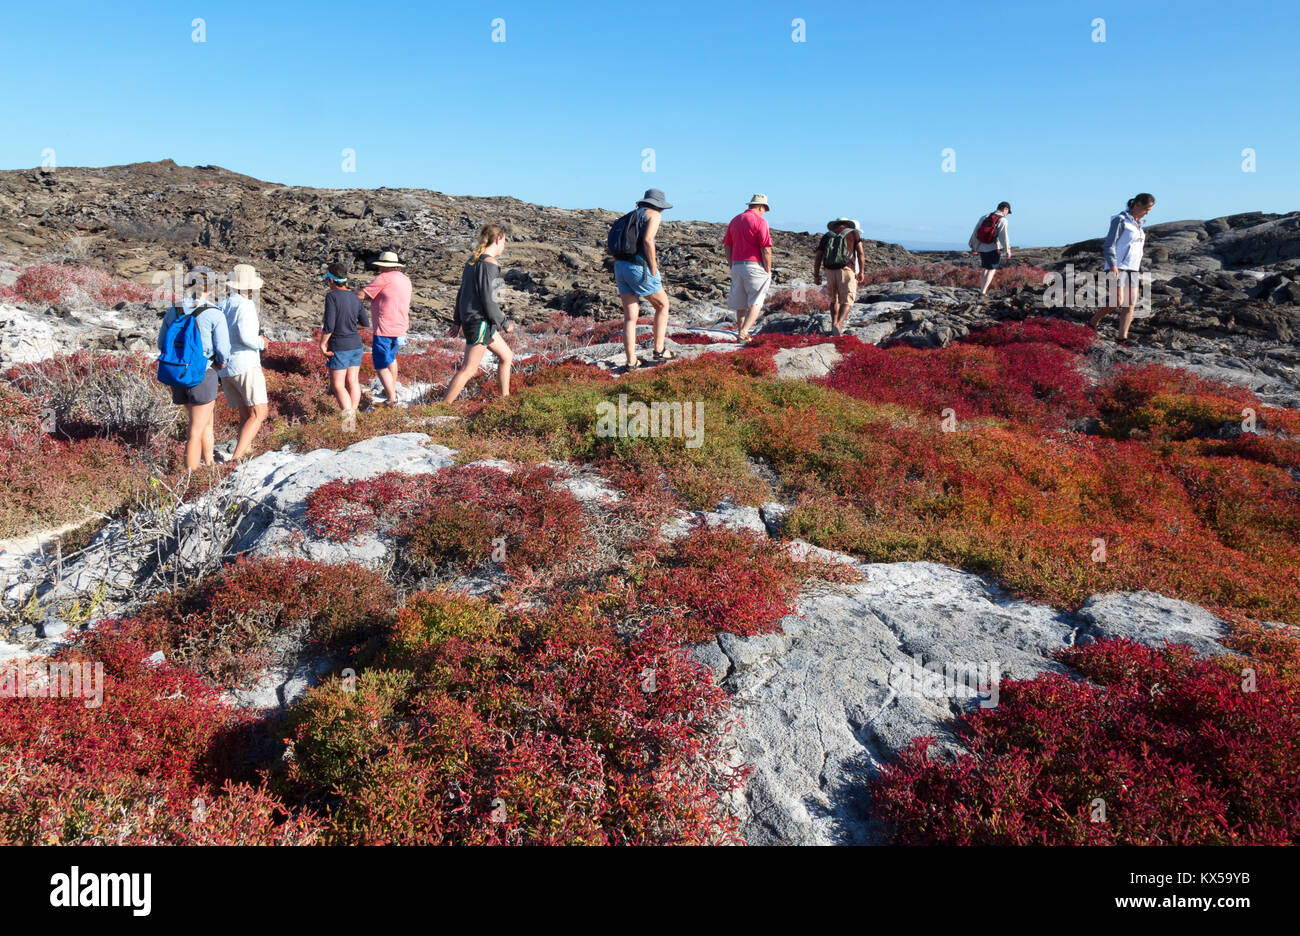 Les touristes chinois marche sur Hat Island amonst les Galapagos, mauvaises herbes colorées Tapis Chinois Hat Island, îles Galapagos Équateur Amérique du Sud Banque D'Images